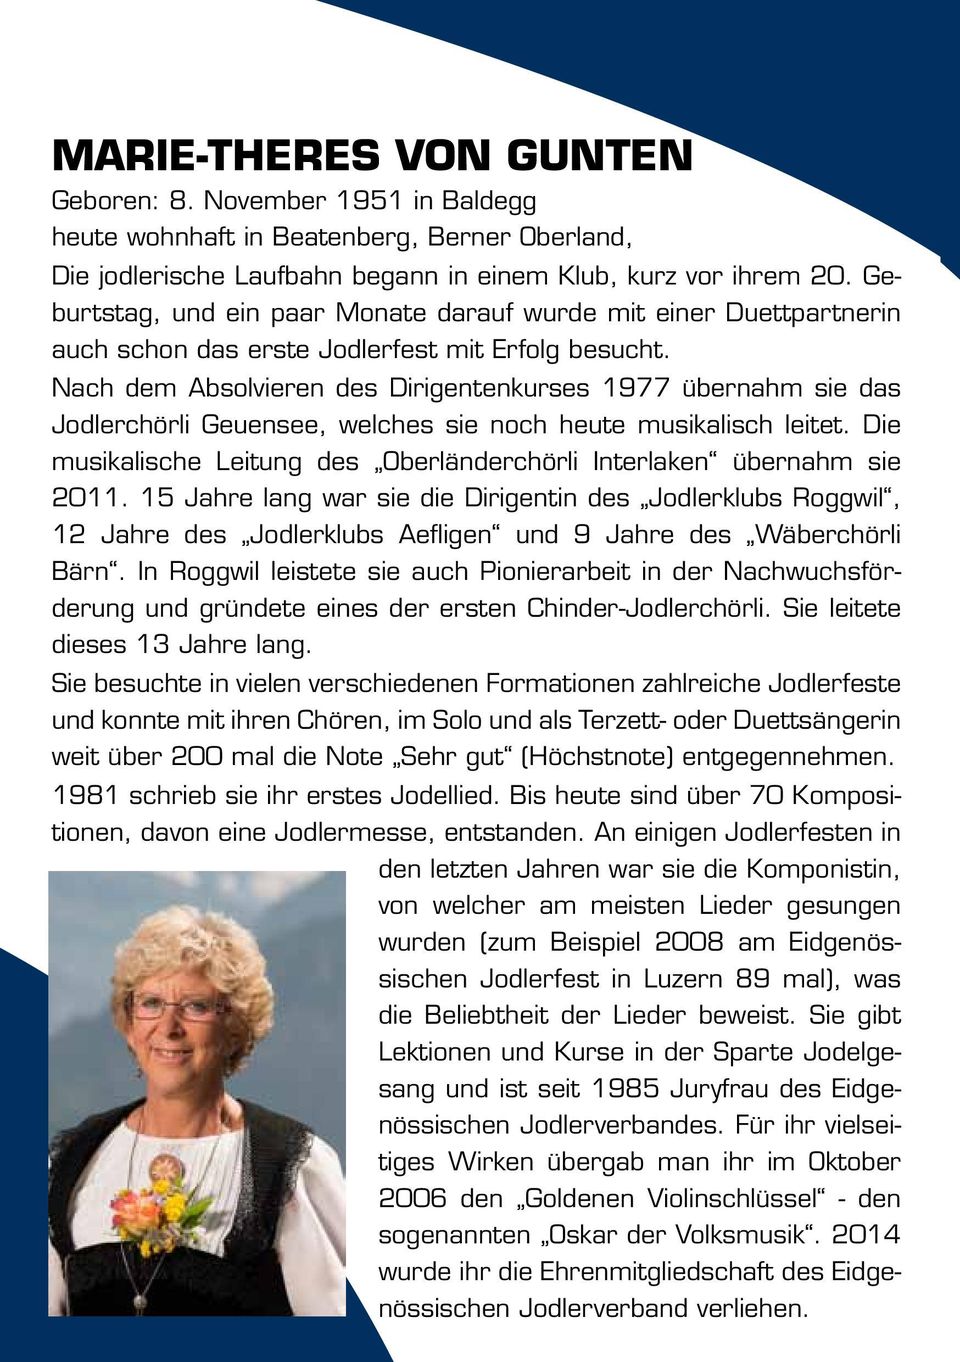 Nach dem Absolvieren des Dirigentenkurses 1977 übernahm sie das Jodlerchörli Geuensee, welches sie noch heute musikalisch leitet.